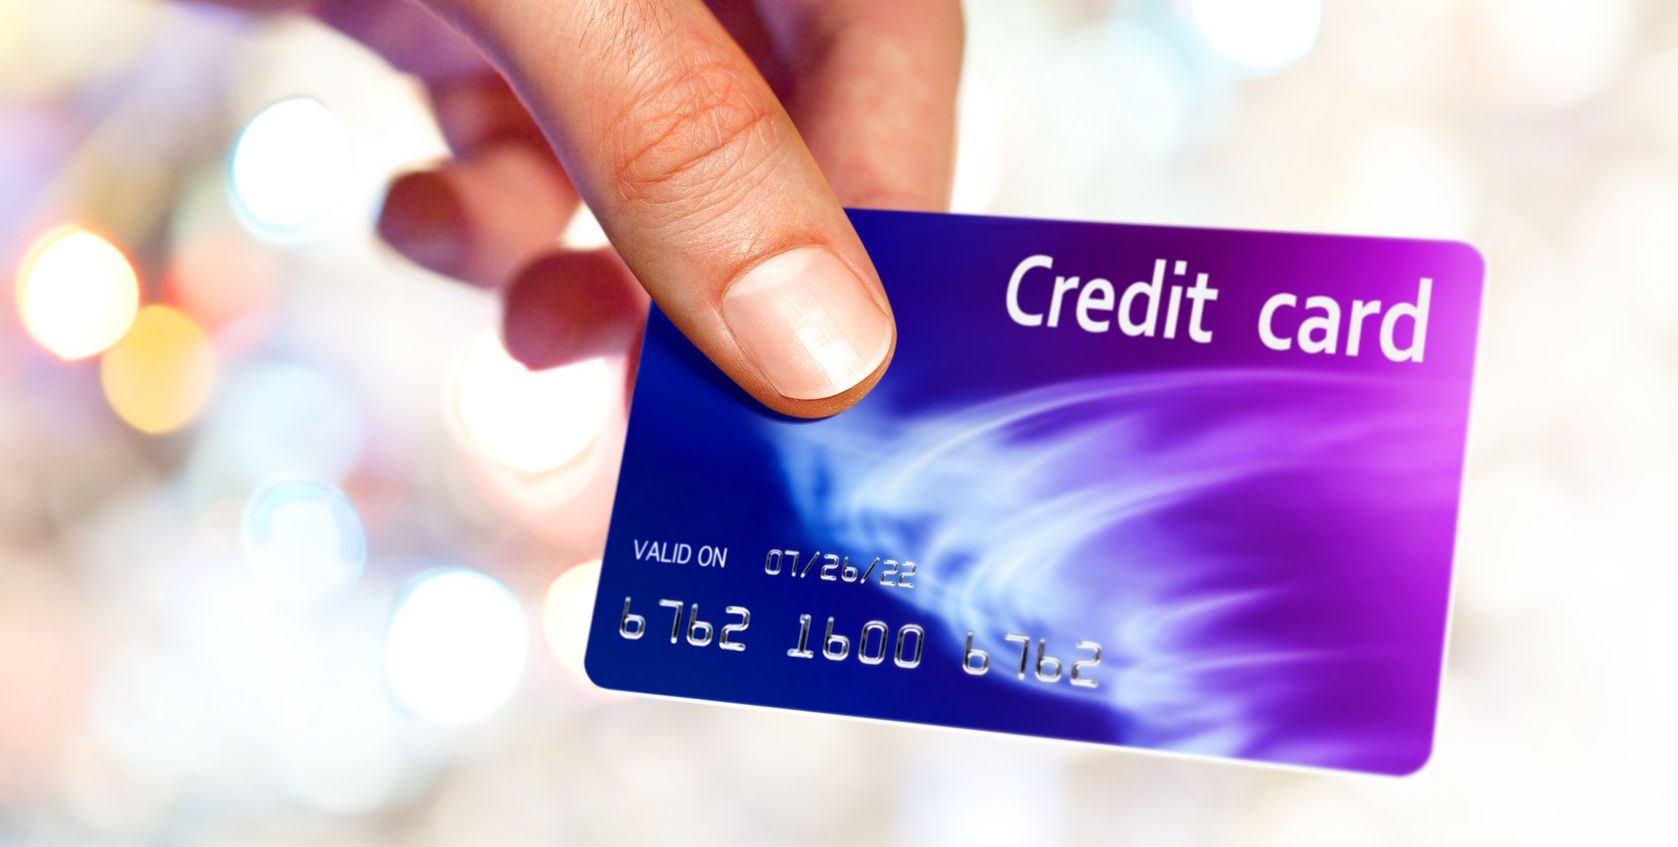 Условия снятия денег с кредитной карты